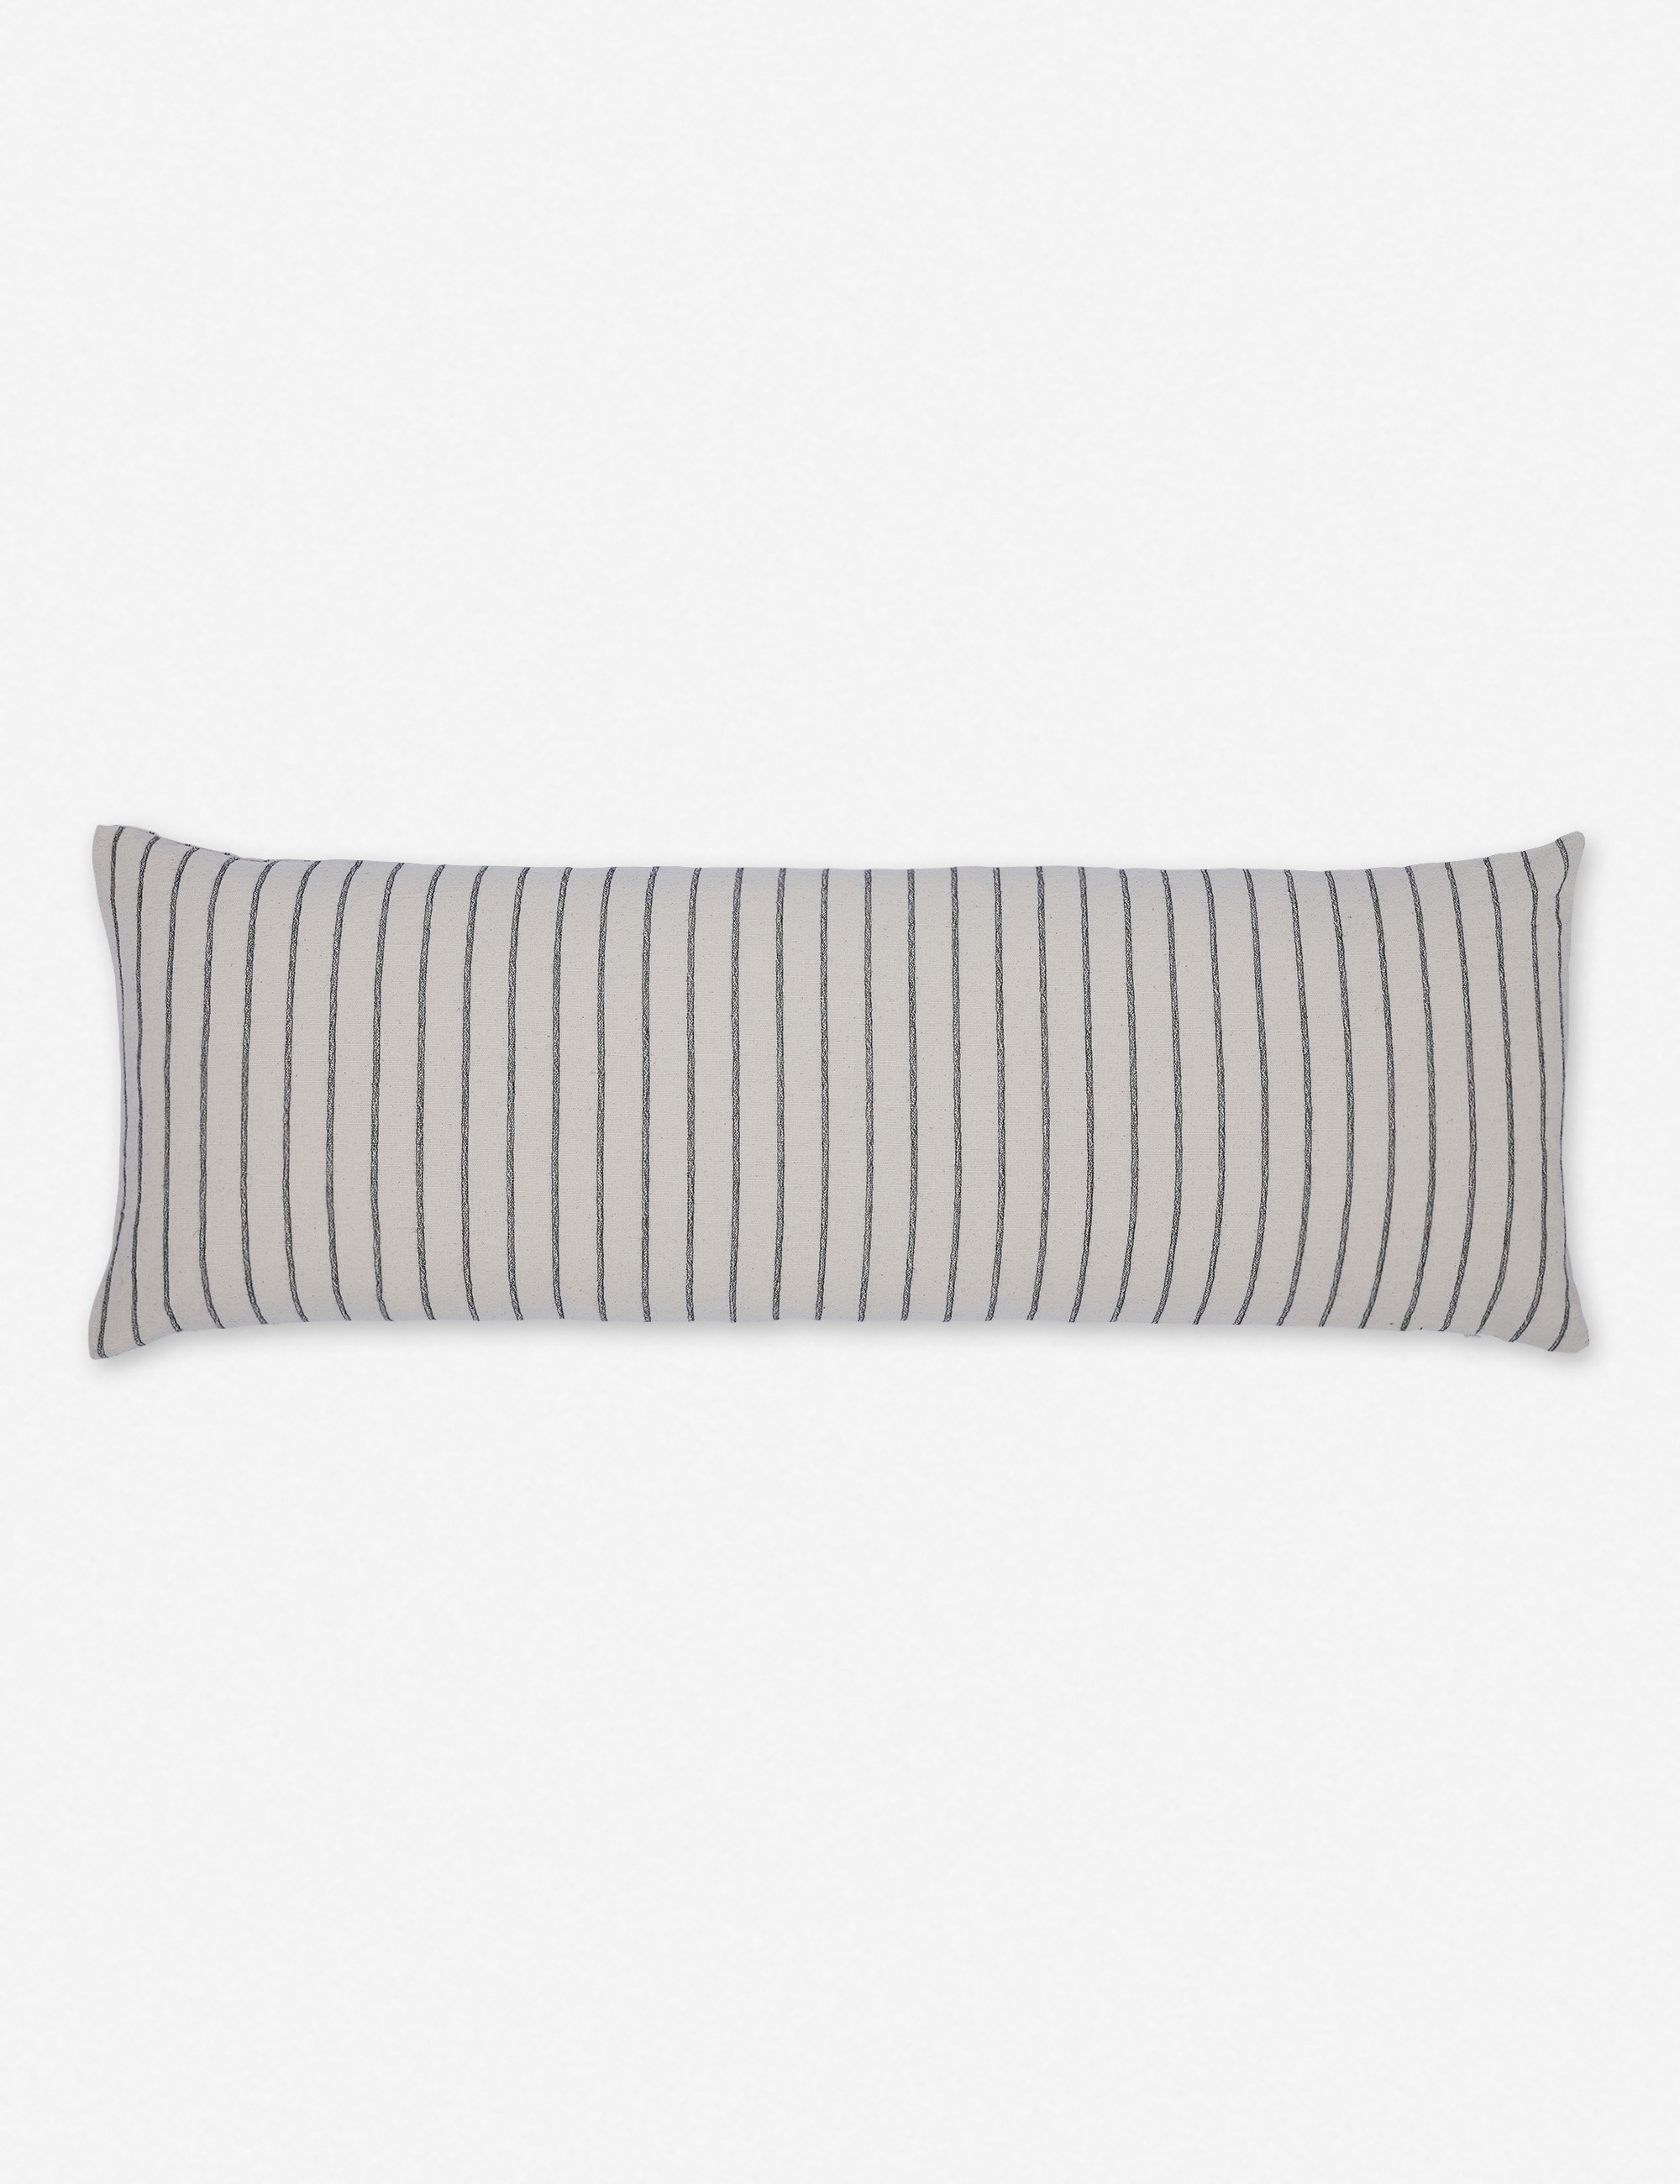 Ojai Long Lumbar Pillow, Black - 40 x 14 - Image 2